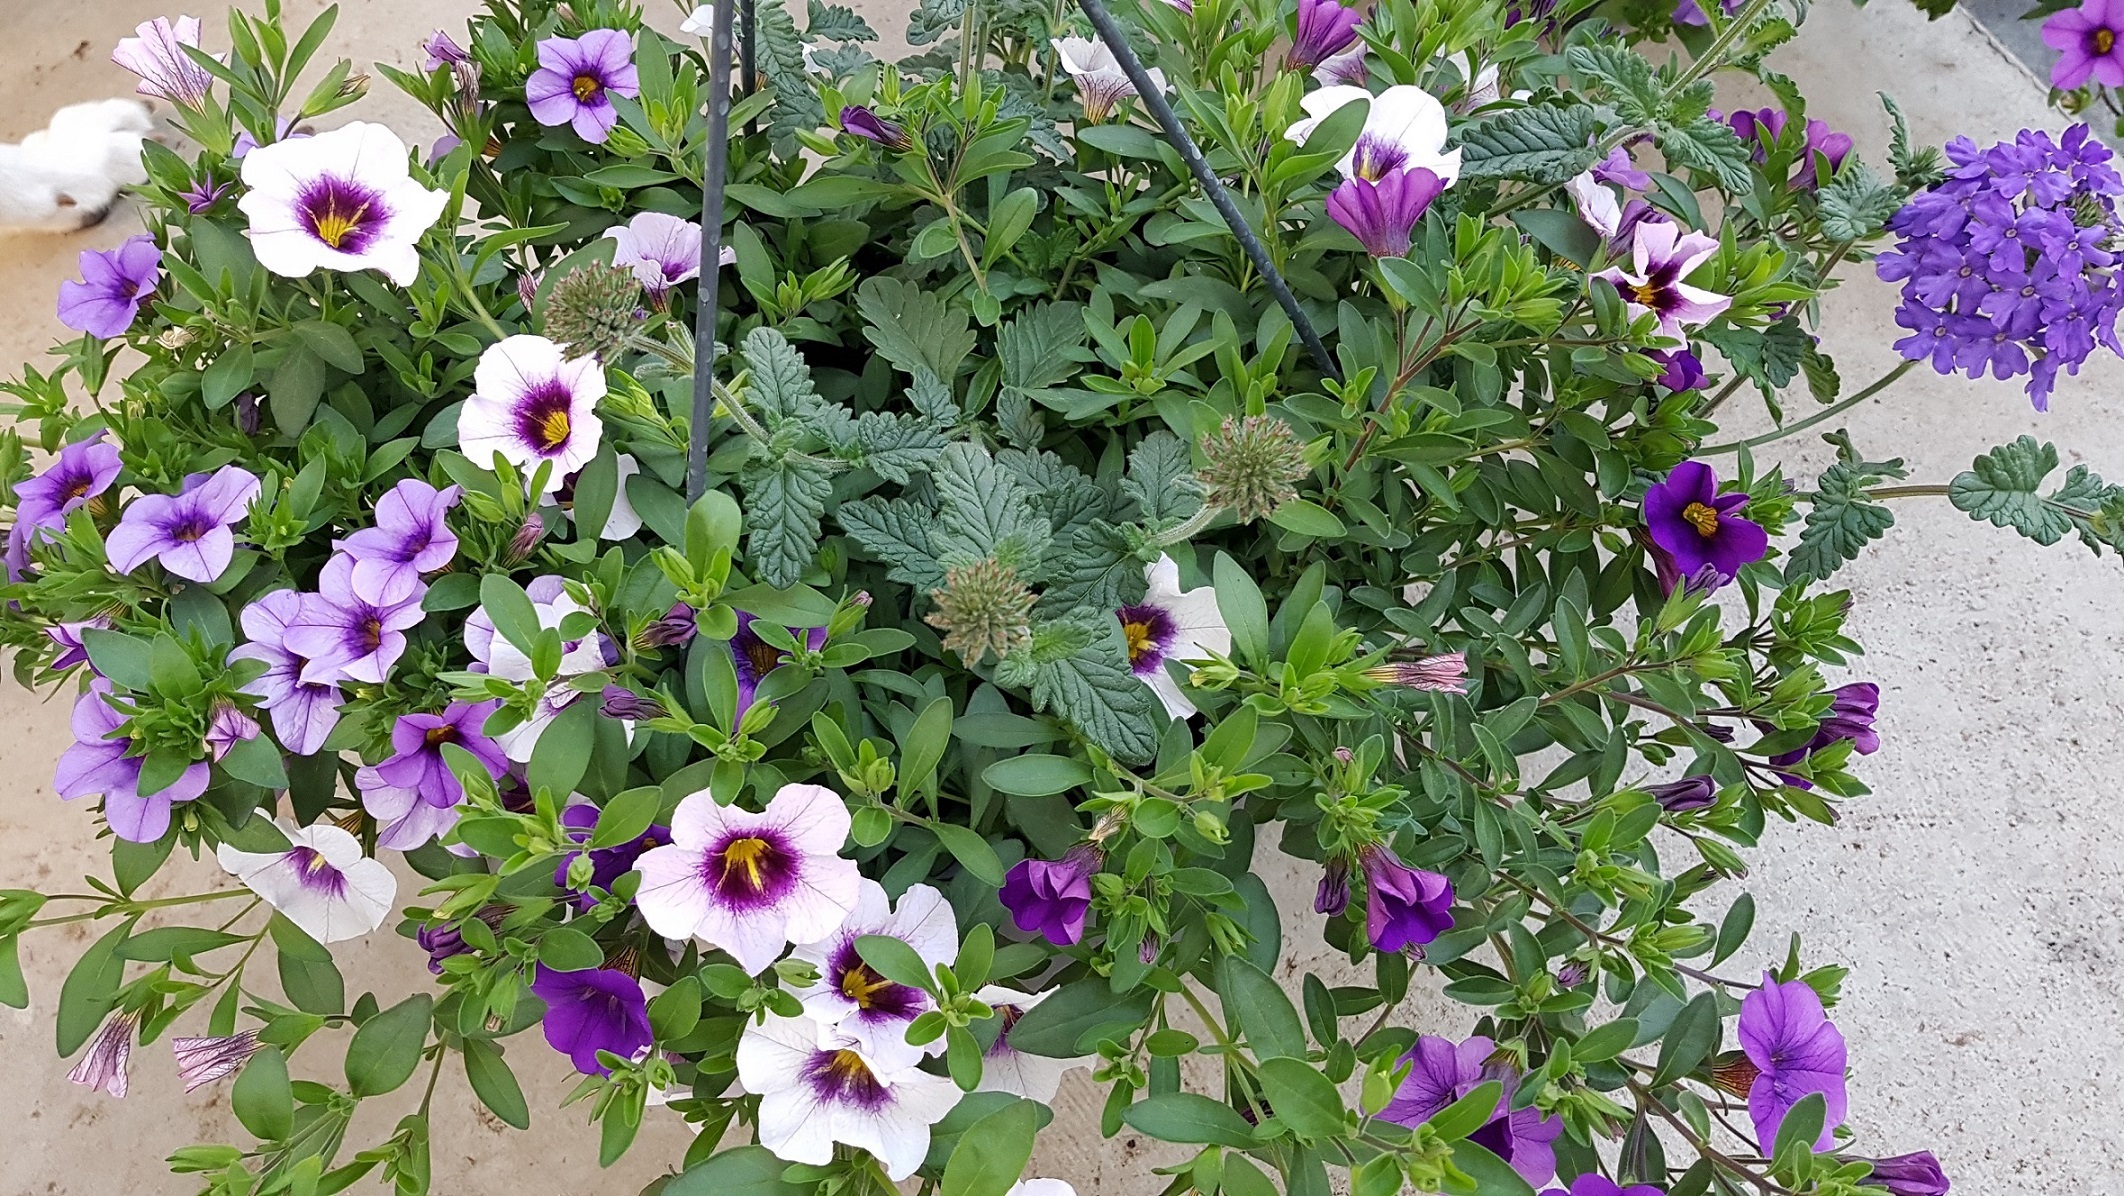 hangmand vol bloemen - blauwe, witte en violette bloemen